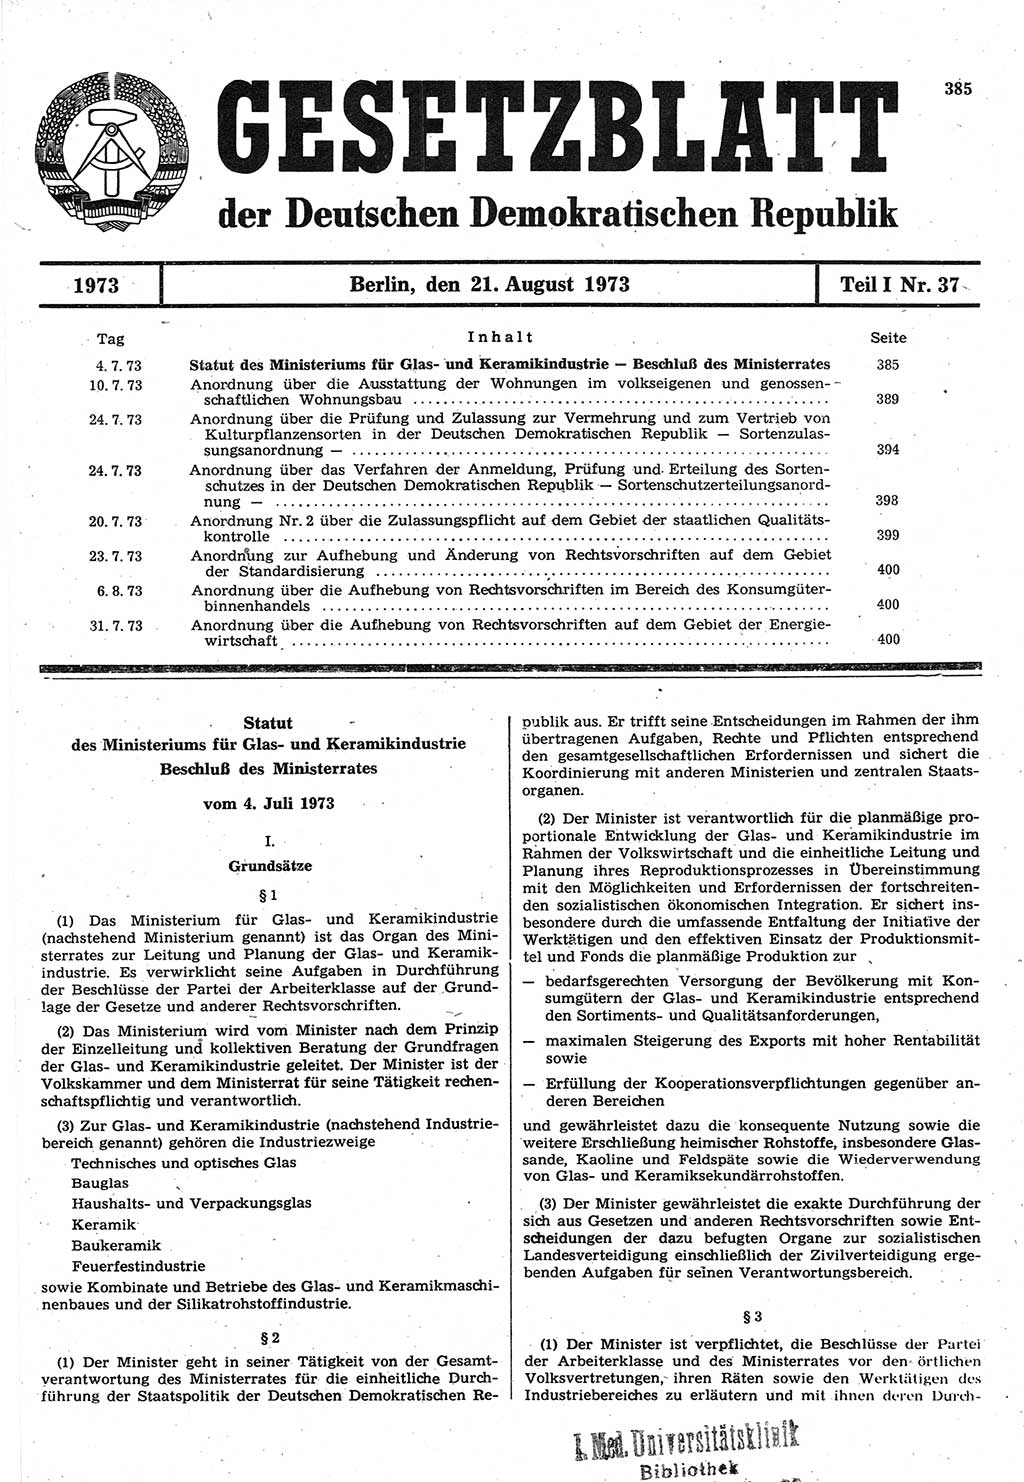 Gesetzblatt (GBl.) der Deutschen Demokratischen Republik (DDR) Teil Ⅰ 1973, Seite 385 (GBl. DDR Ⅰ 1973, S. 385)